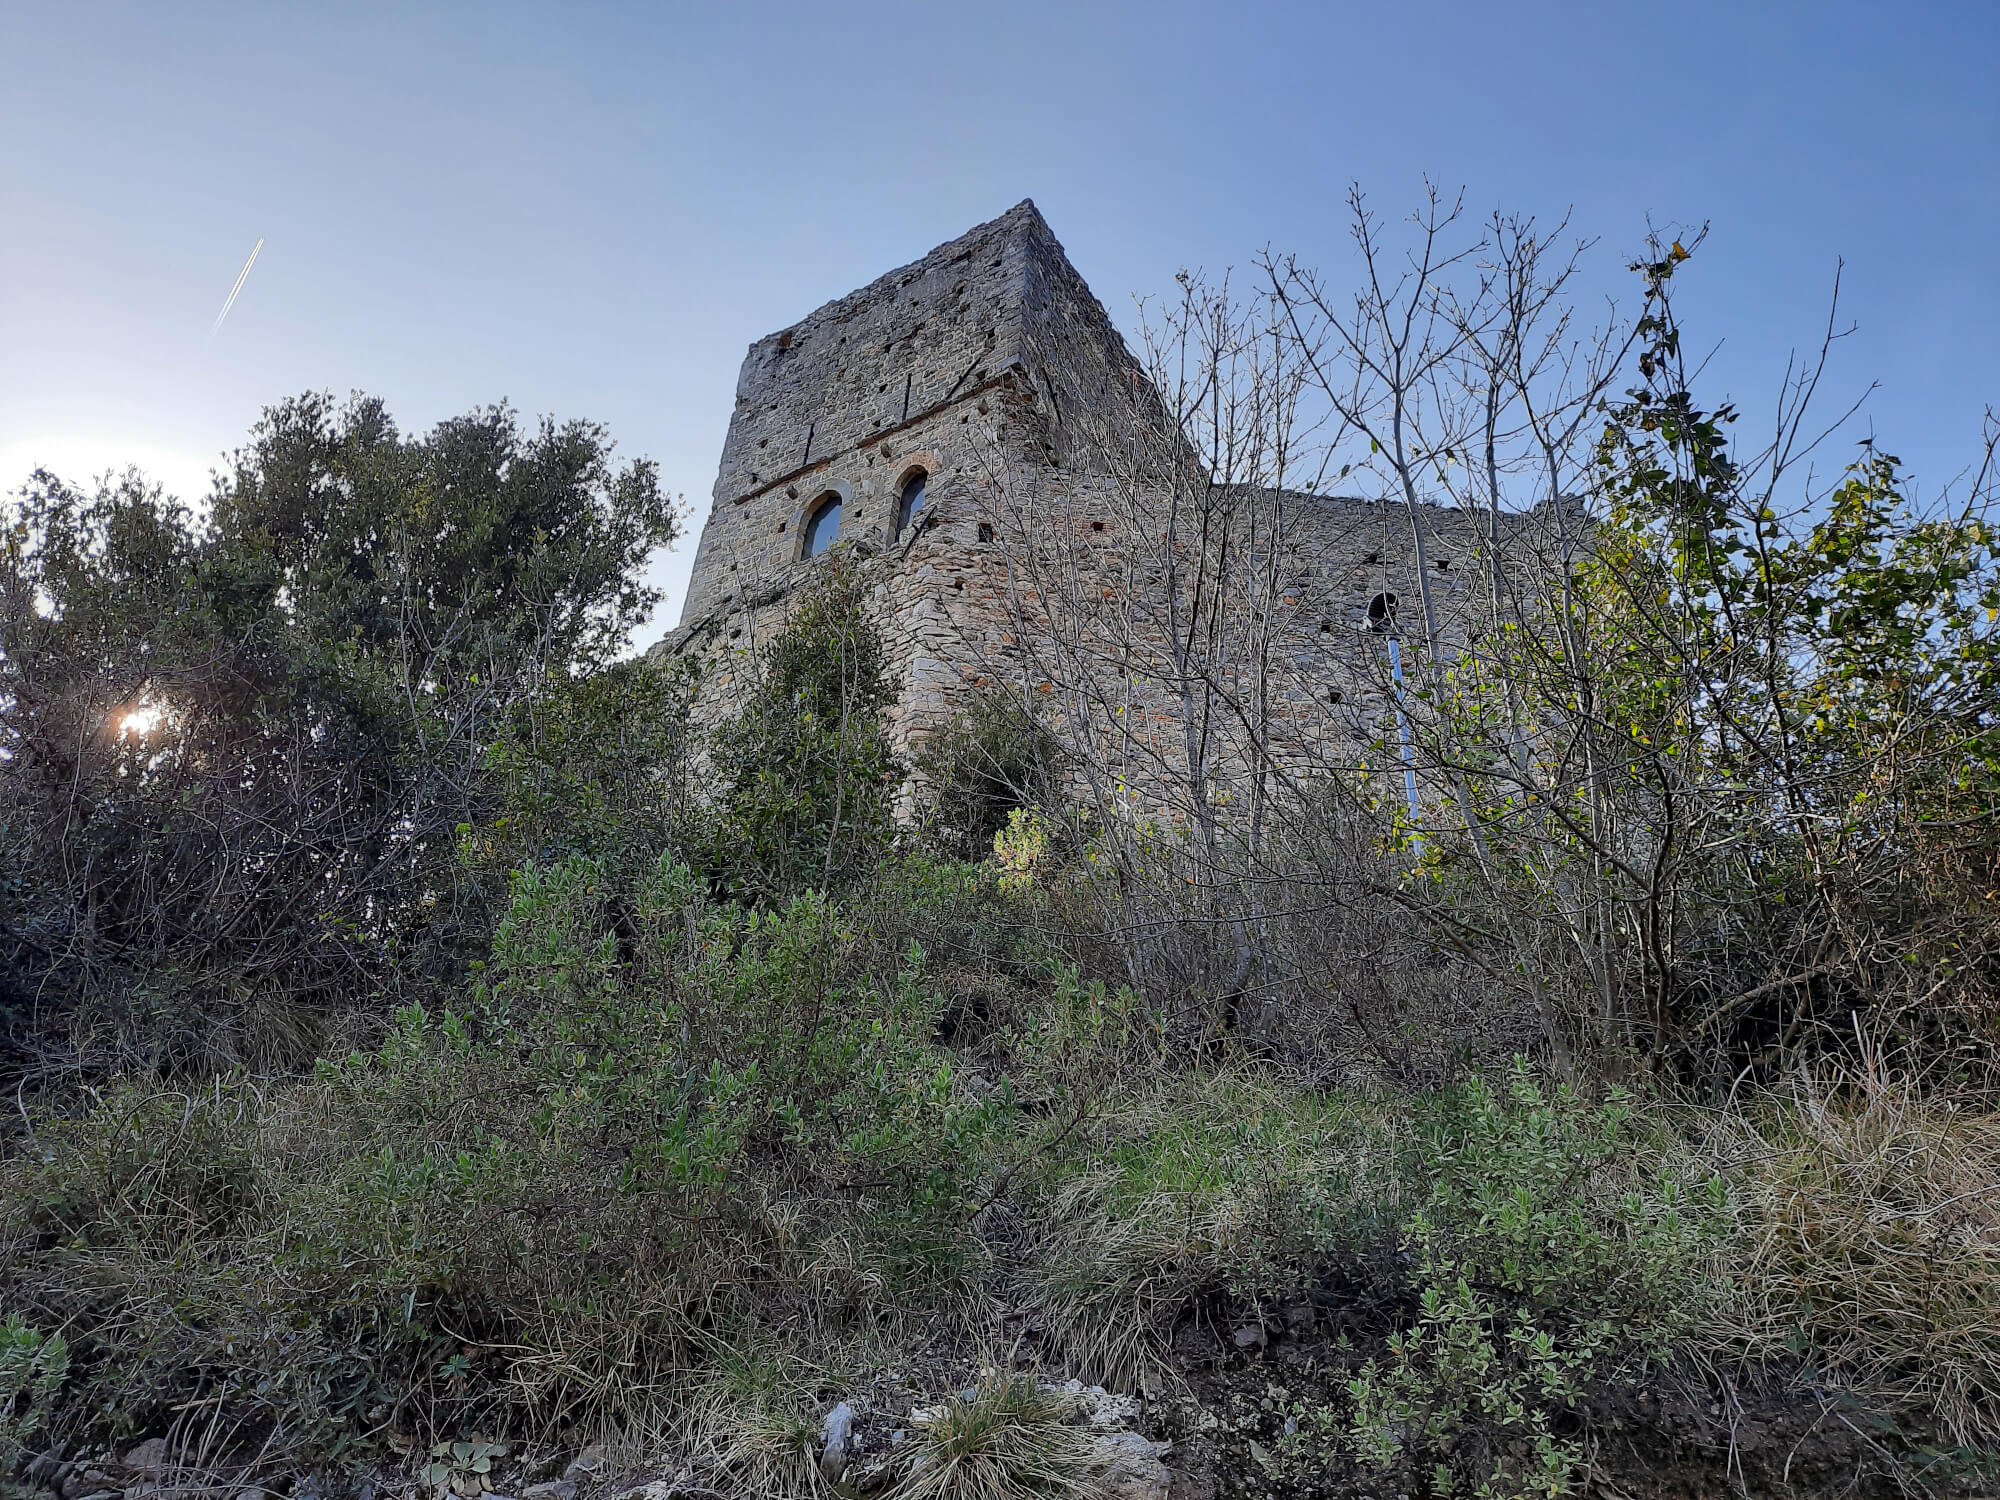 View of Zuccarello's castle